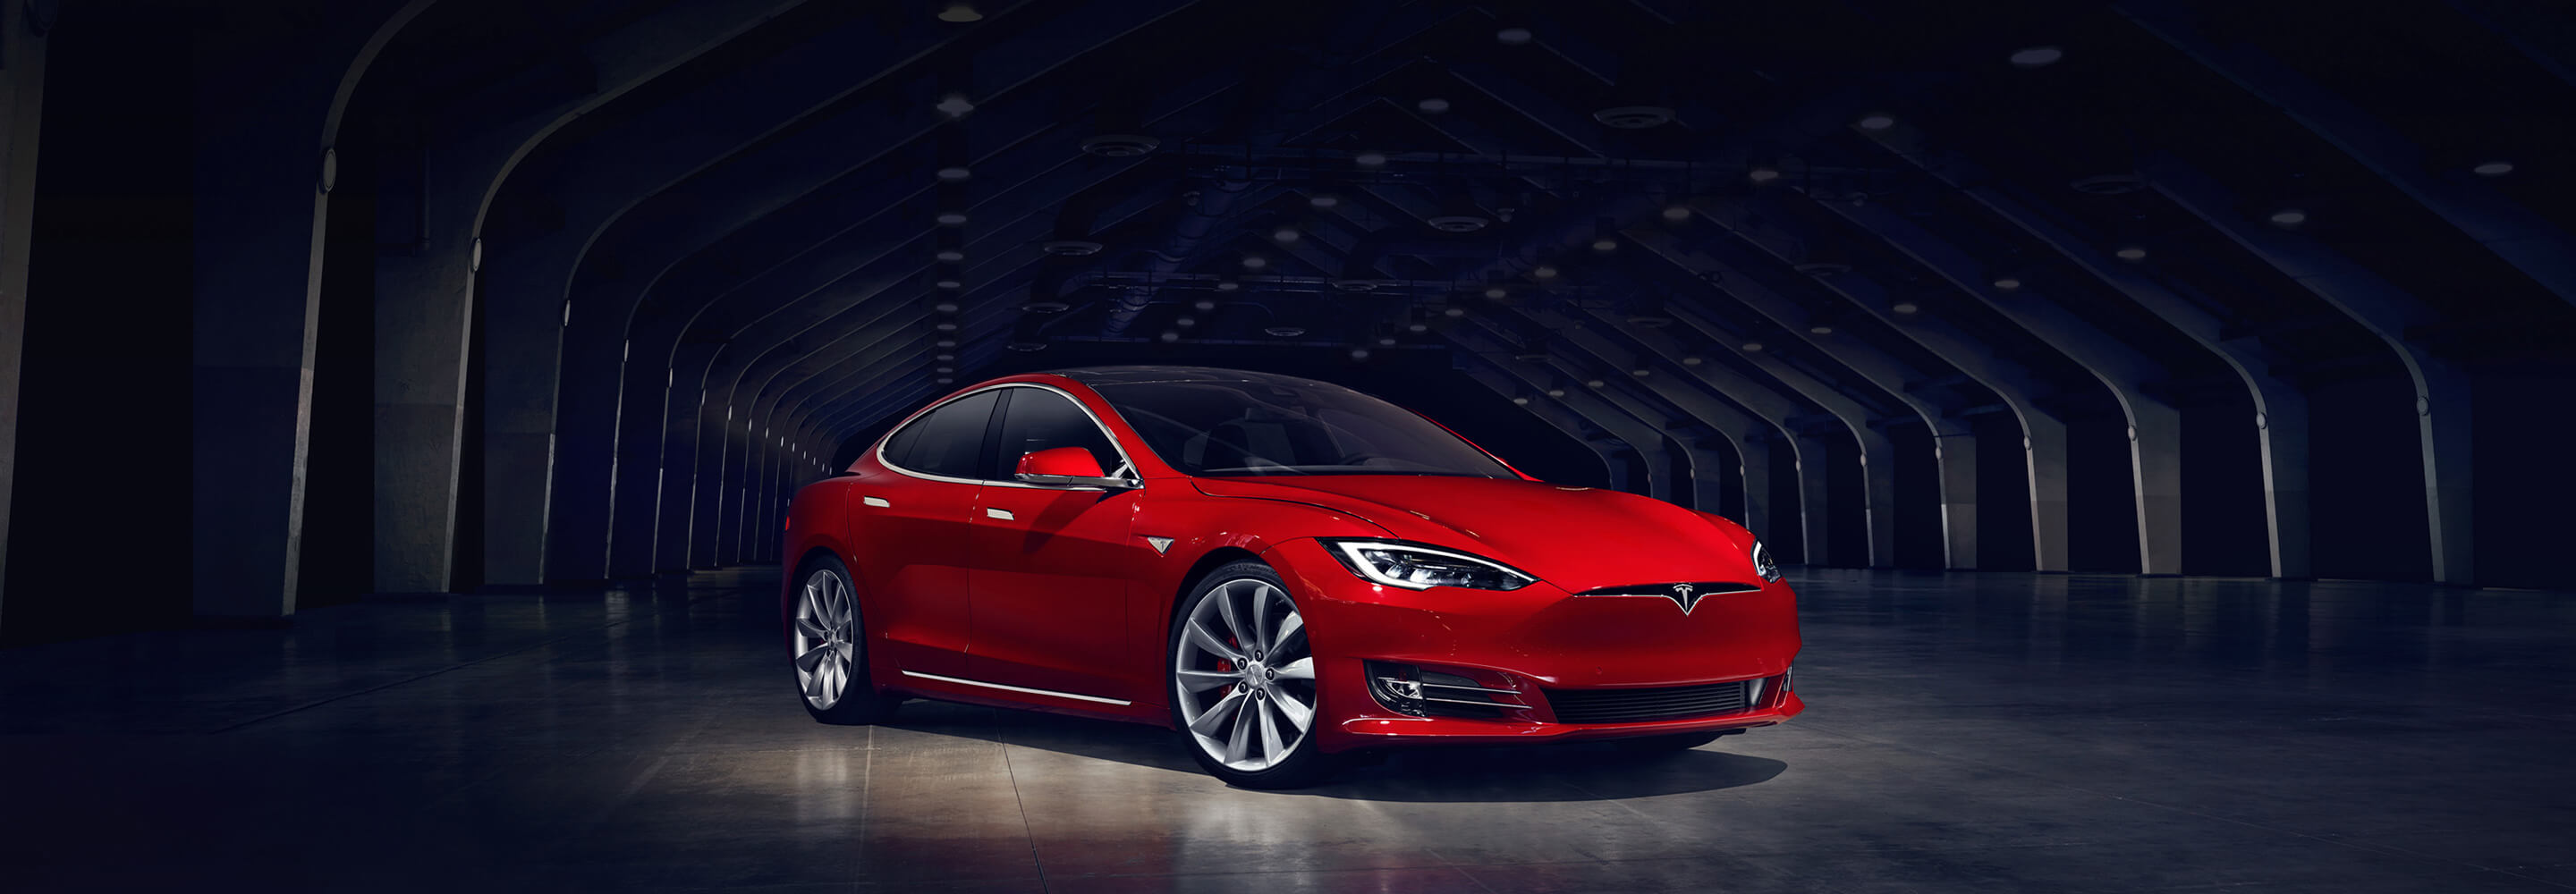 Tesla Model S 6SpeedOnline 1